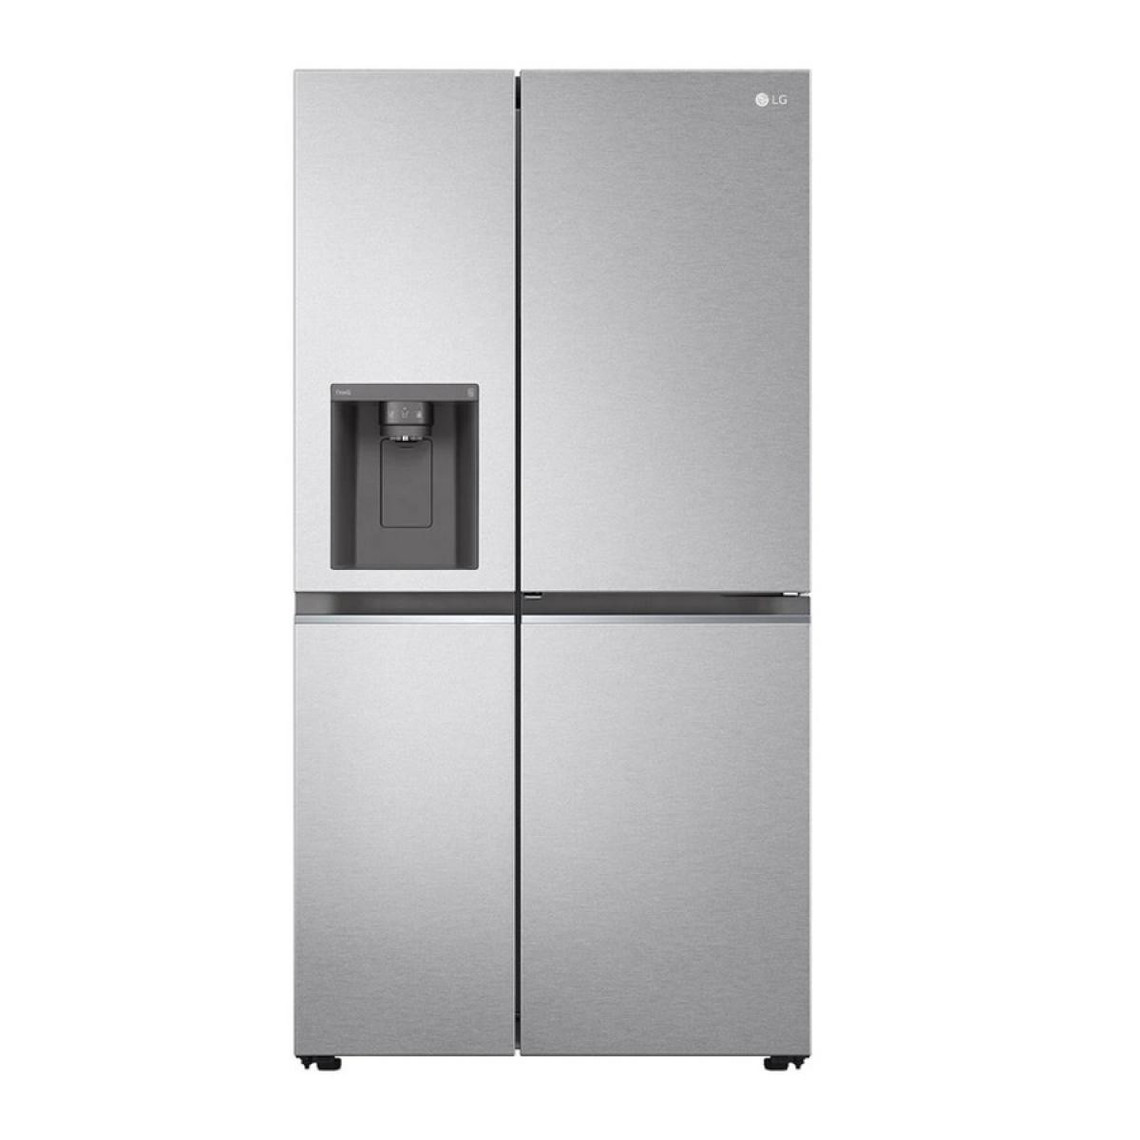 LG Réfrigérateur américain 91cm 635l nofrost - GSJV80MBLF - LG